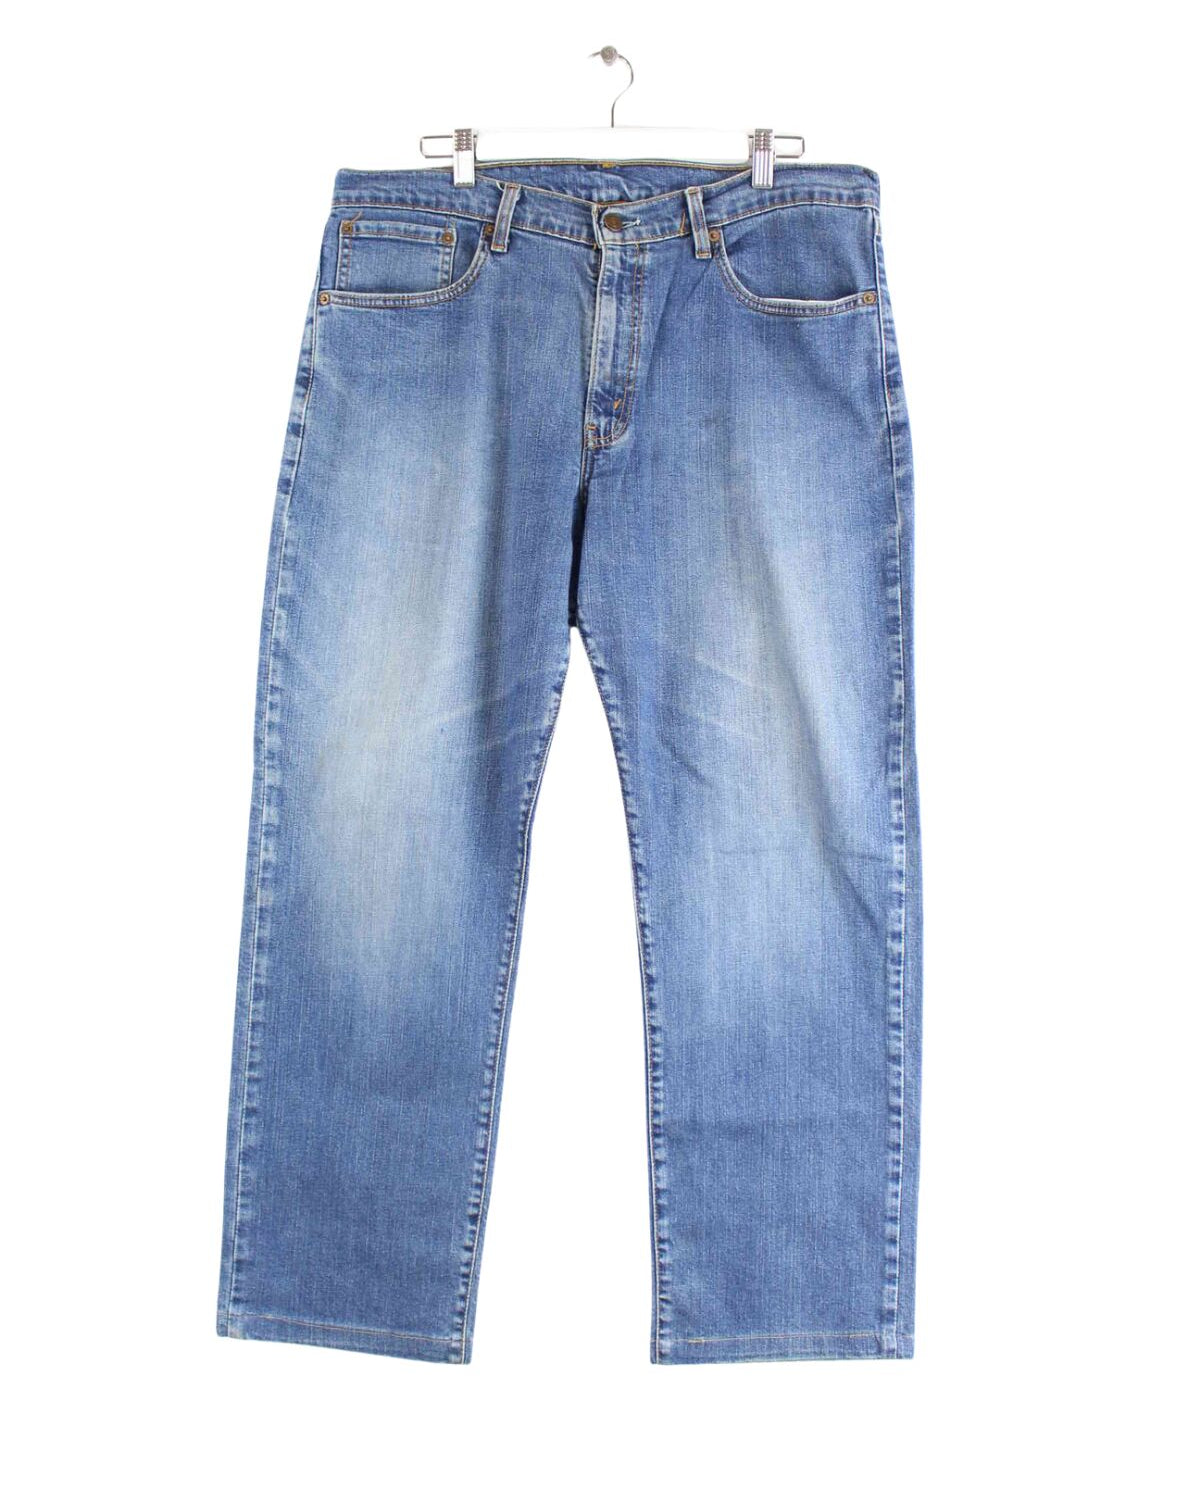 Levi's Jeans Blau W36 L30 (front image)